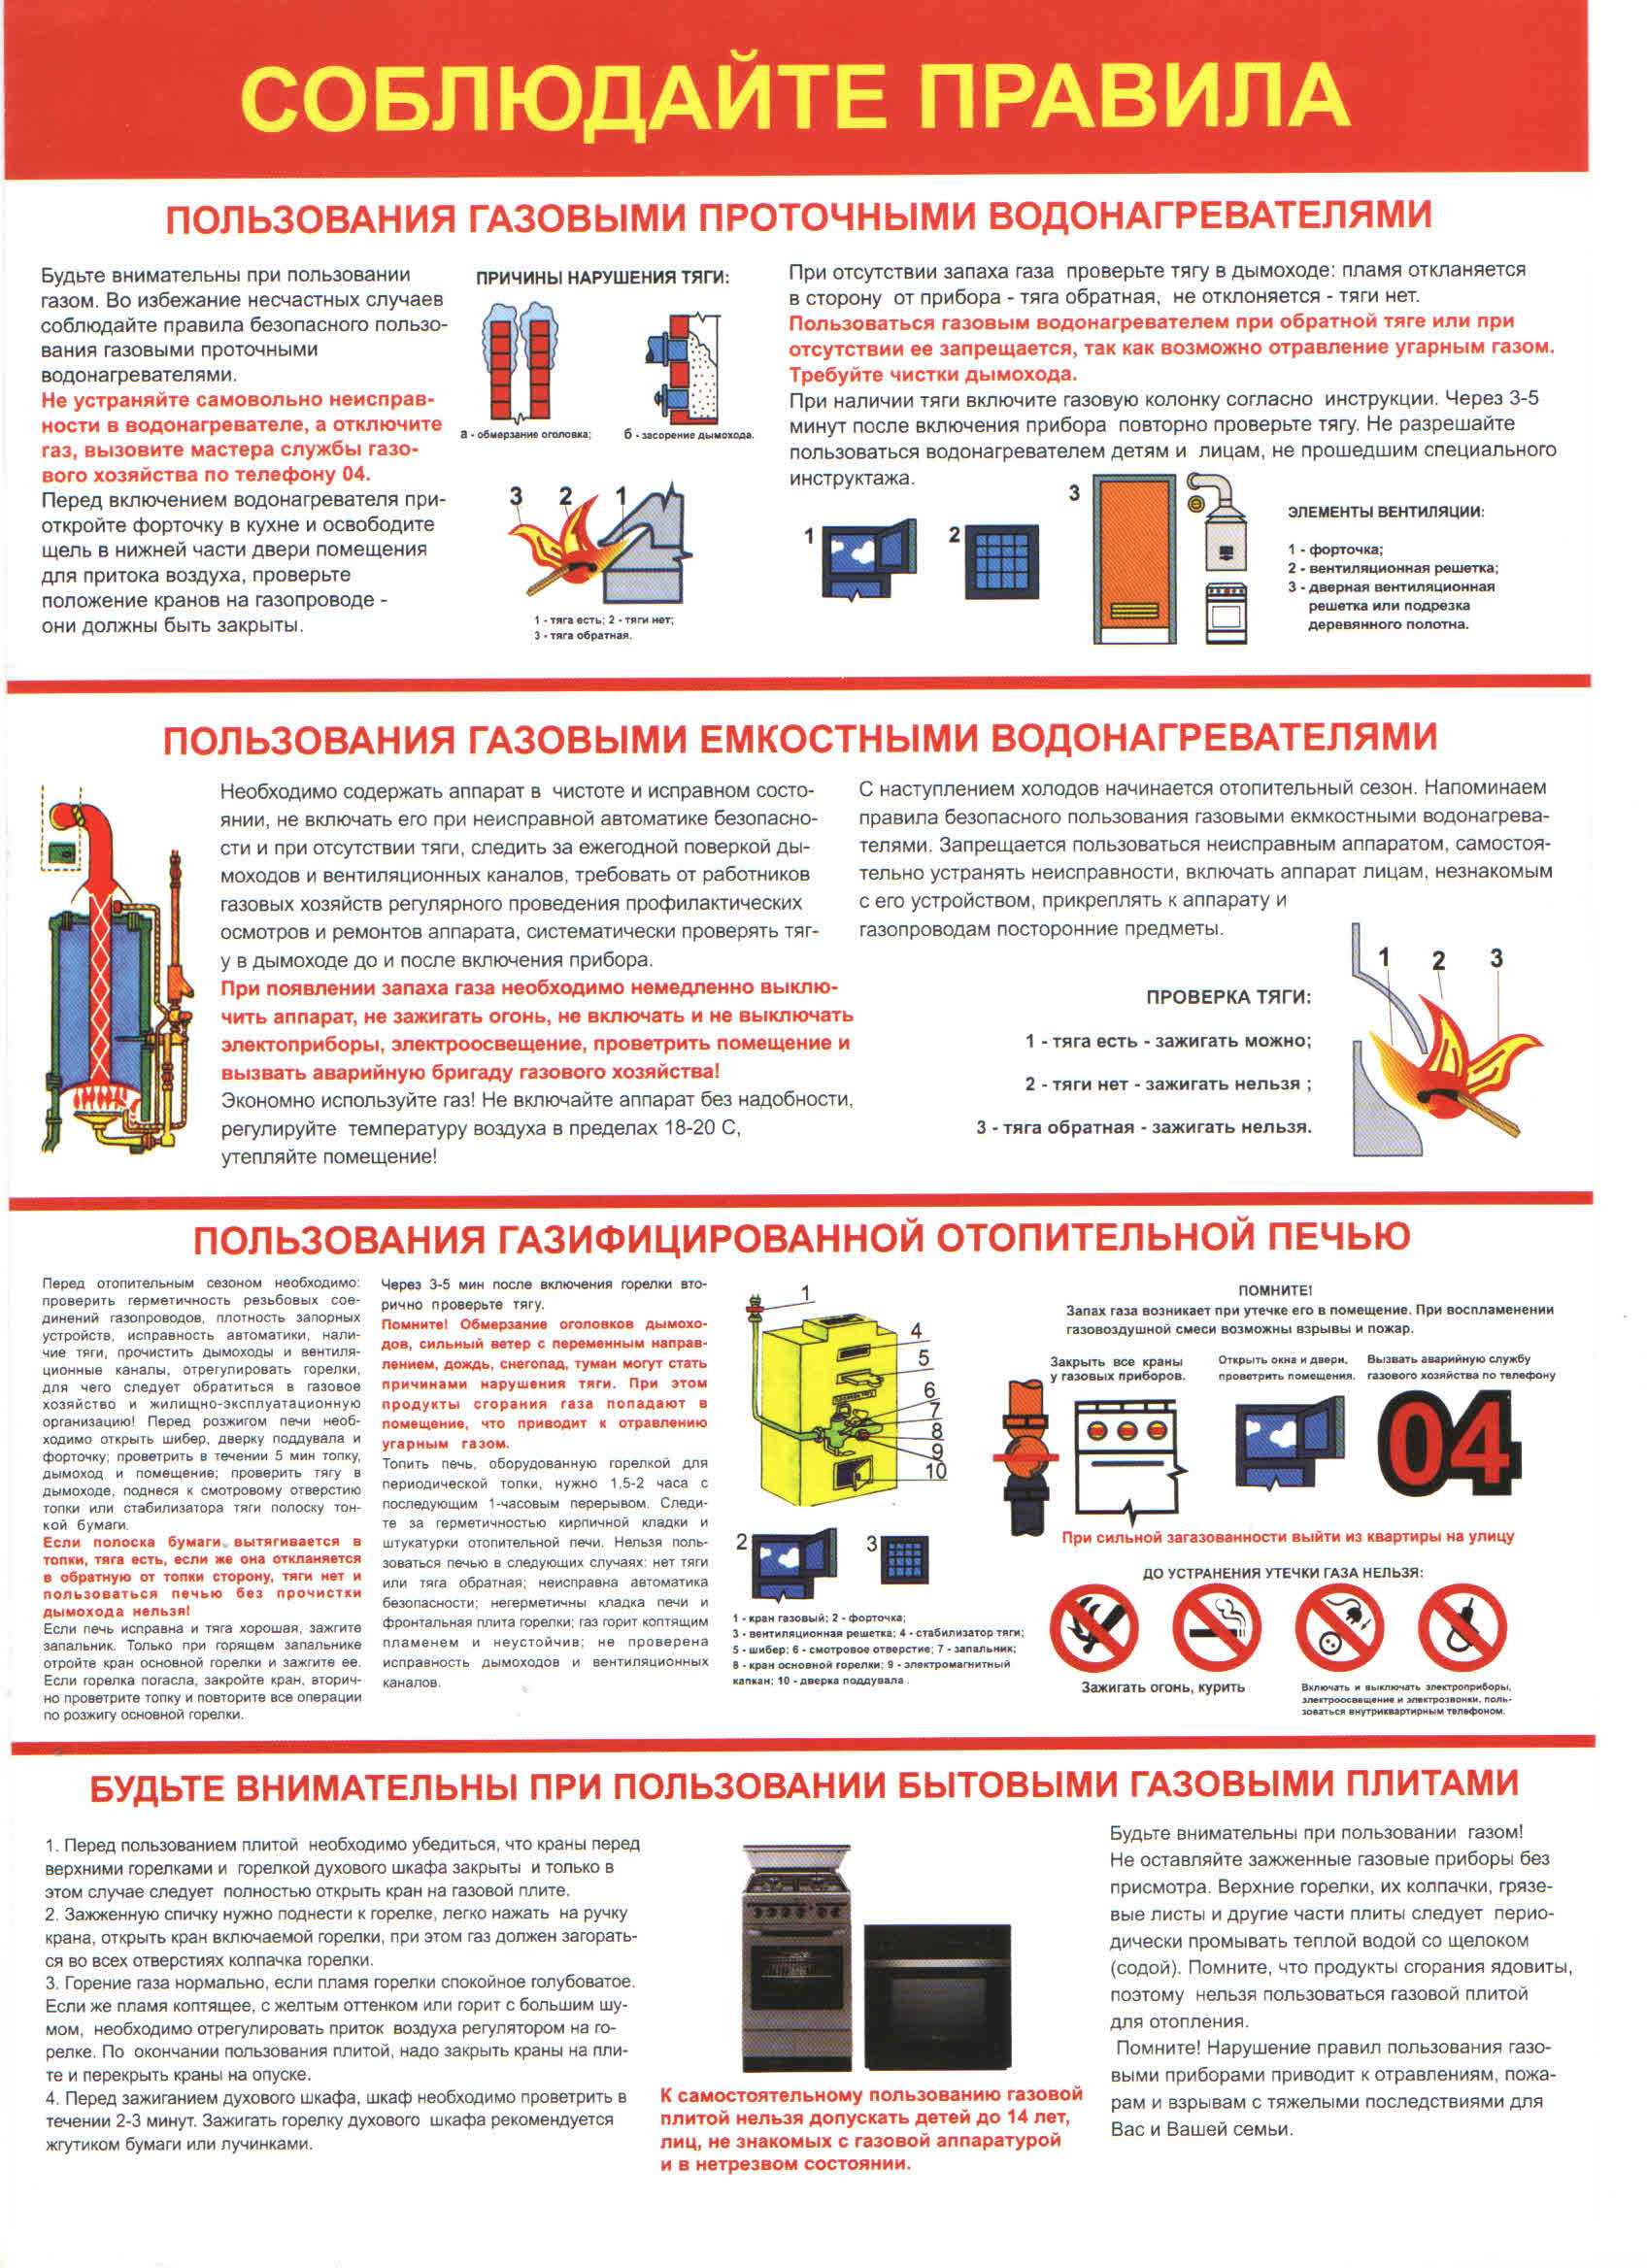 1.1 методические указания по консервации оборудования стационарных электростанций, выводимых в резерв (стр. 8 )